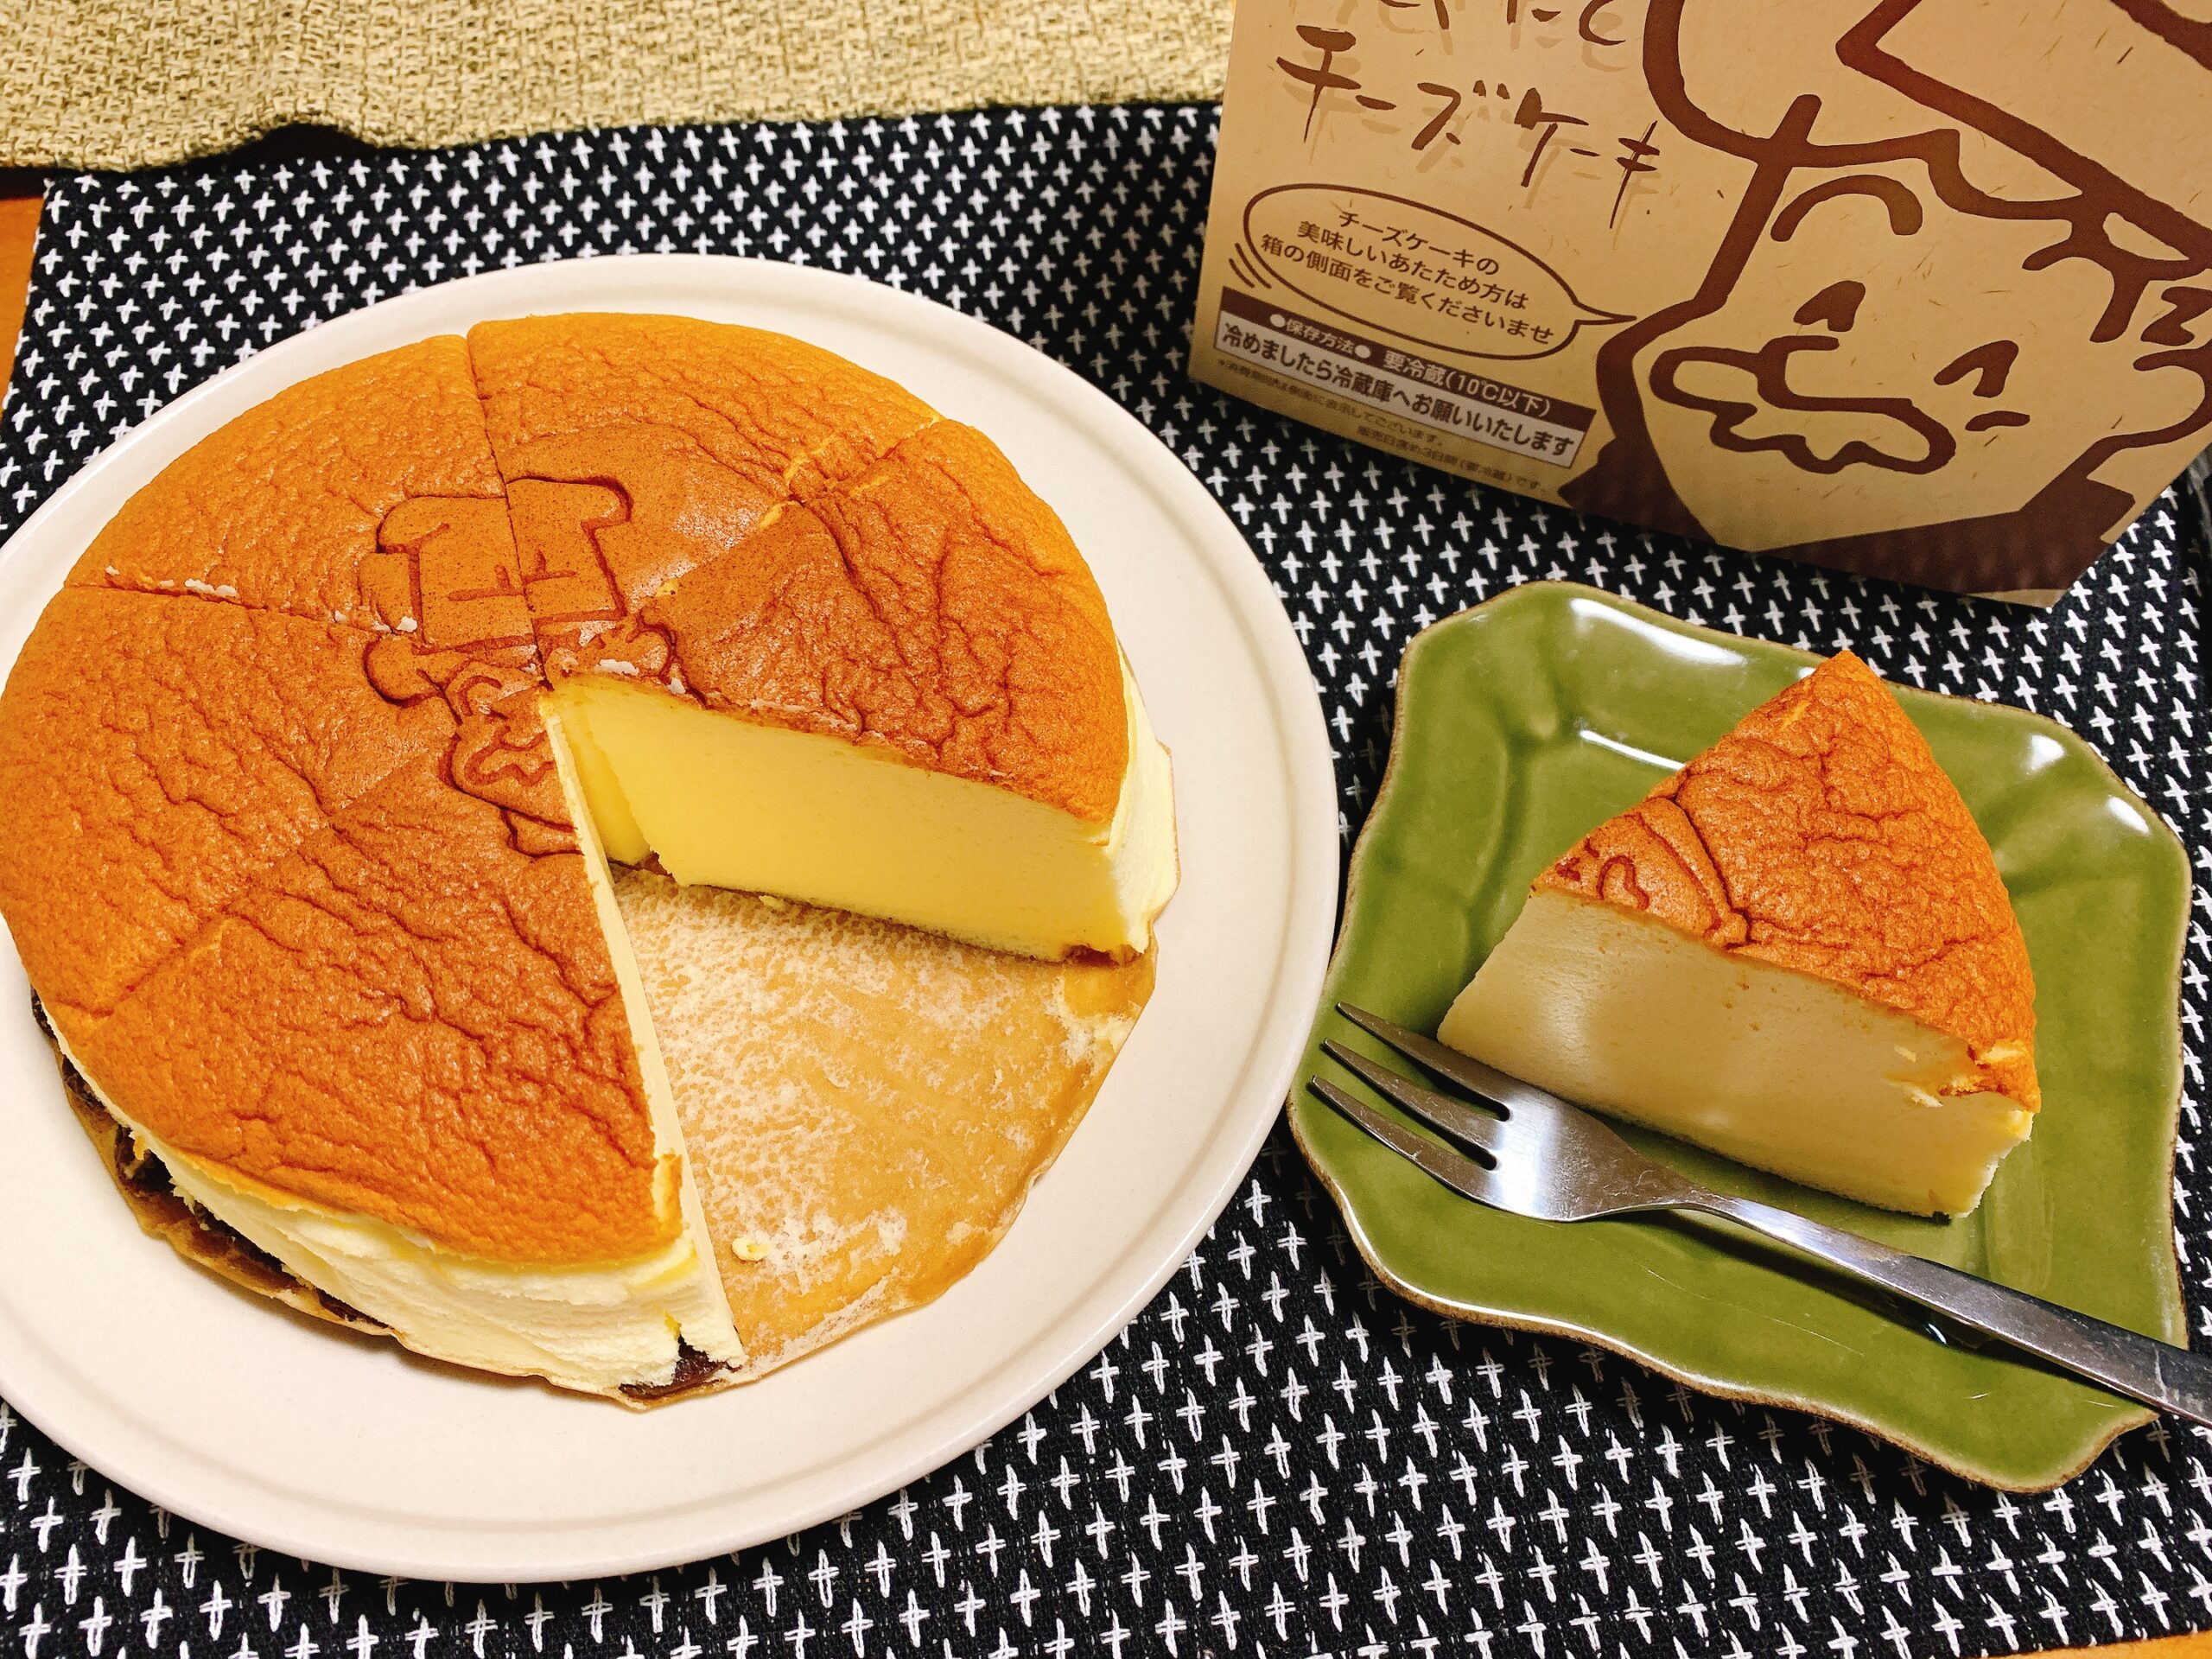 待ってました りくろーおじさんのチーズケーキ 神戸三宮催事情報 神戸ふらっとグルメ